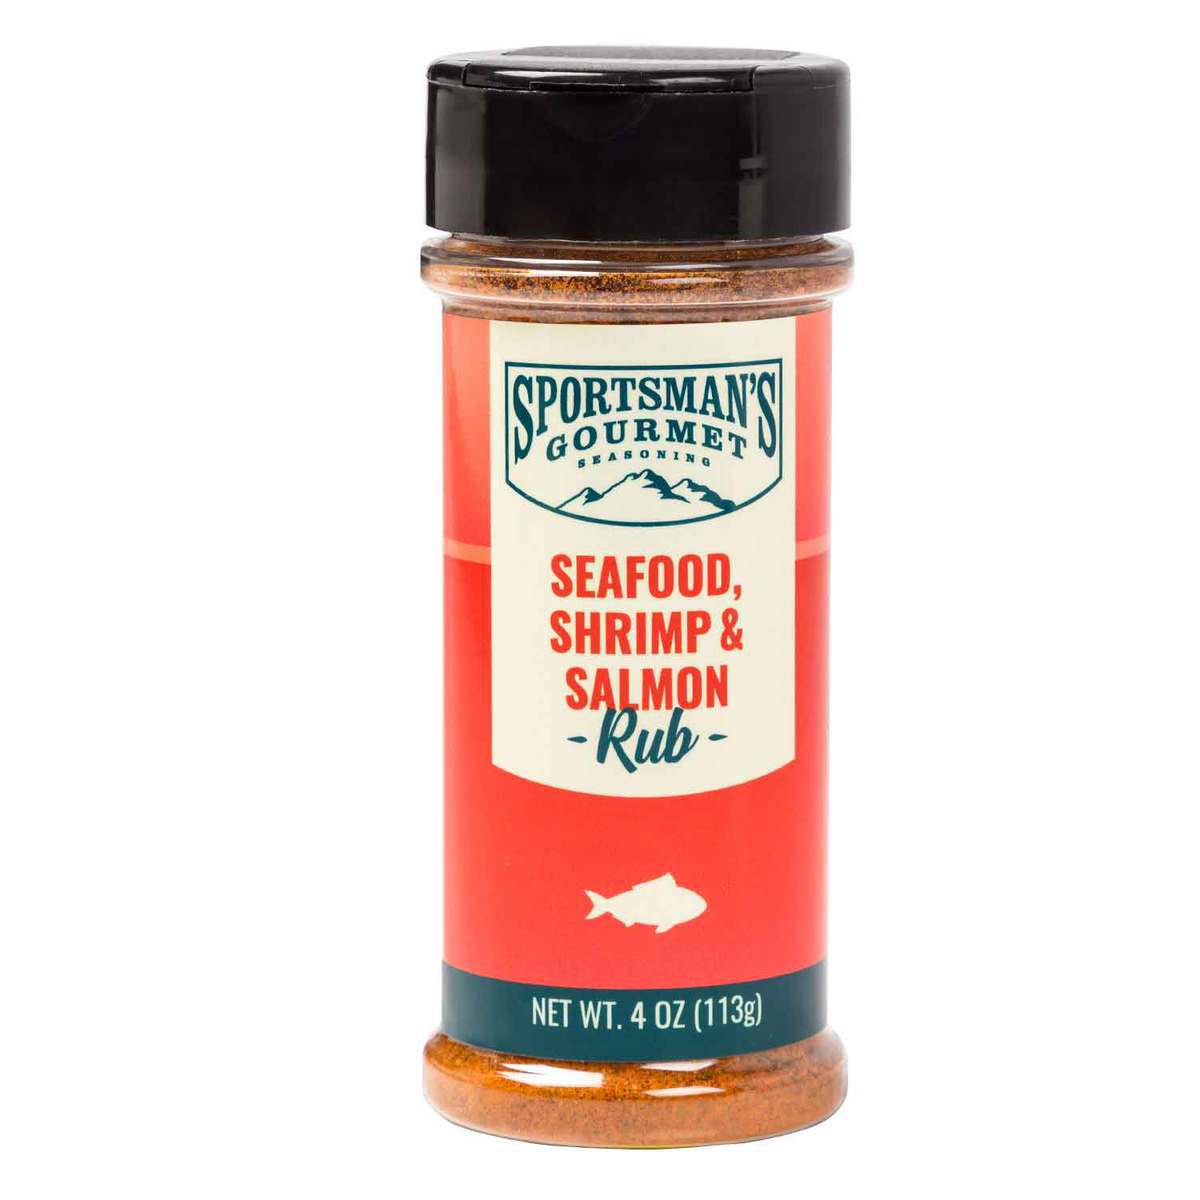 https://www.sportsmans.com/medias/sportsmans-gourmet-seafood-shrimp-salmon-rub-1530051-1.jpg?context=bWFzdGVyfGltYWdlc3w1OTMwNHxpbWFnZS9qcGVnfGltYWdlcy9oMTIvaDU2Lzk3MzM5OTQxMTkxOTguanBnfDc1OTU3MmVlMjJkOGZlZDhjYjE0YWNkYTgxMjQ1MzVjMjZlNTNjNzI0YWVkODgxYWMyMmFmZjFiMTRiN2YwZjU